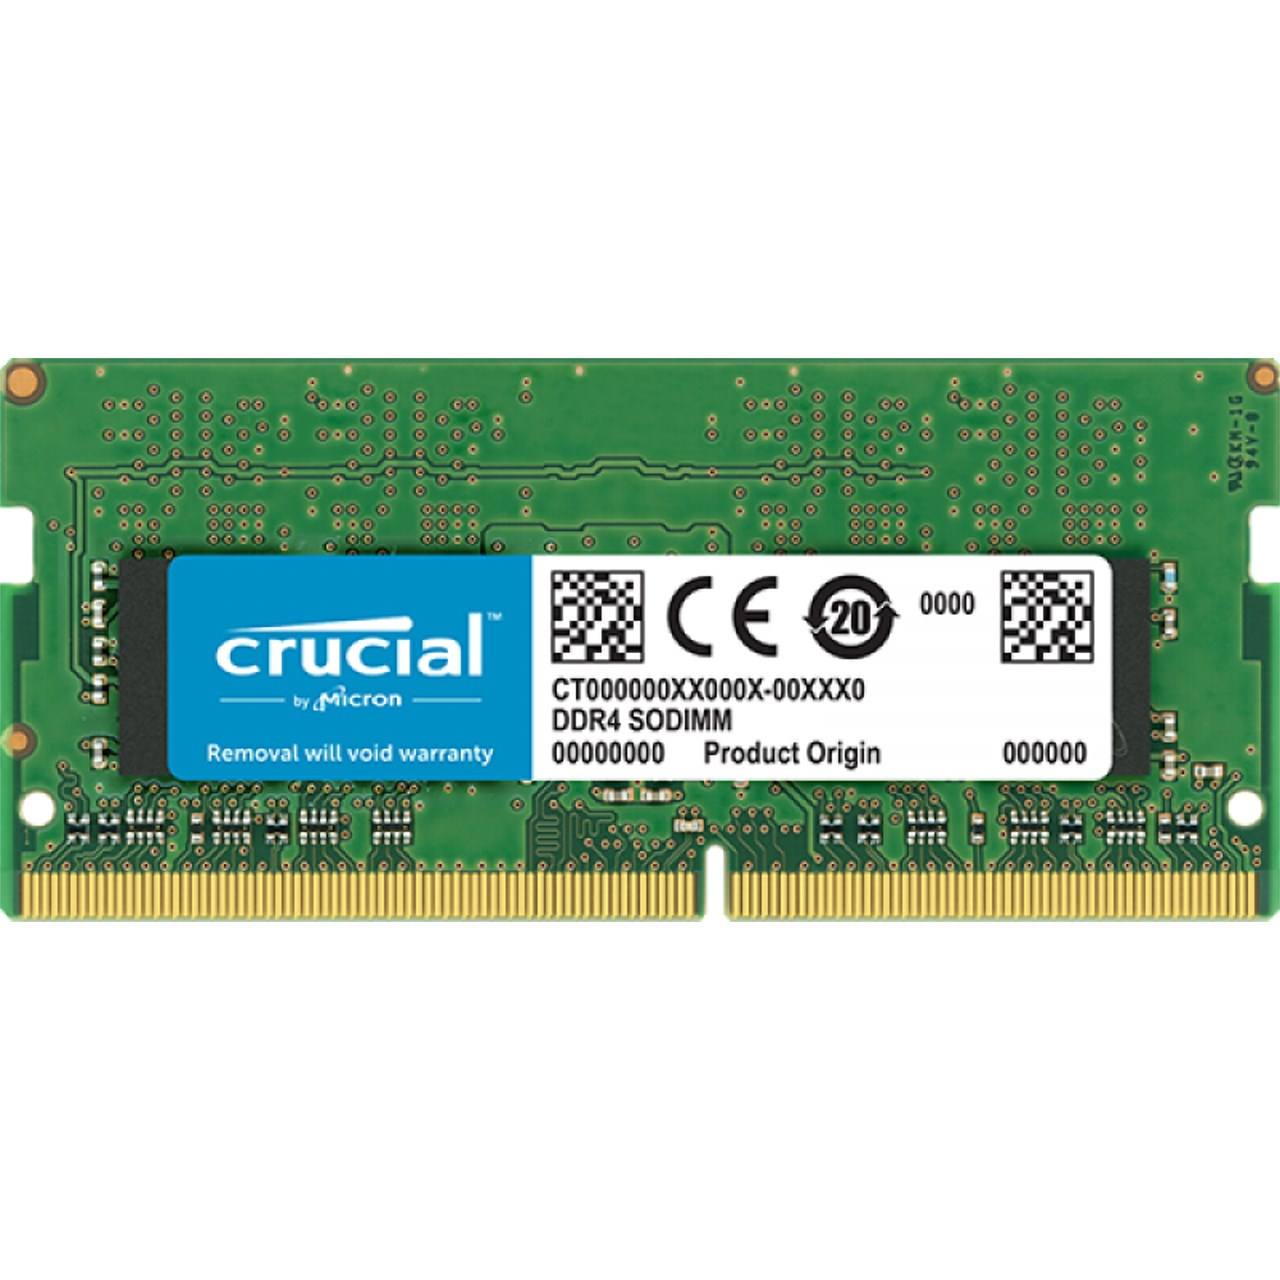 رم لپ تاپ کروشیال مدل DDR4 تک کاناله 2133MHz با ظرفیت 16GB با تایمینگ CL15